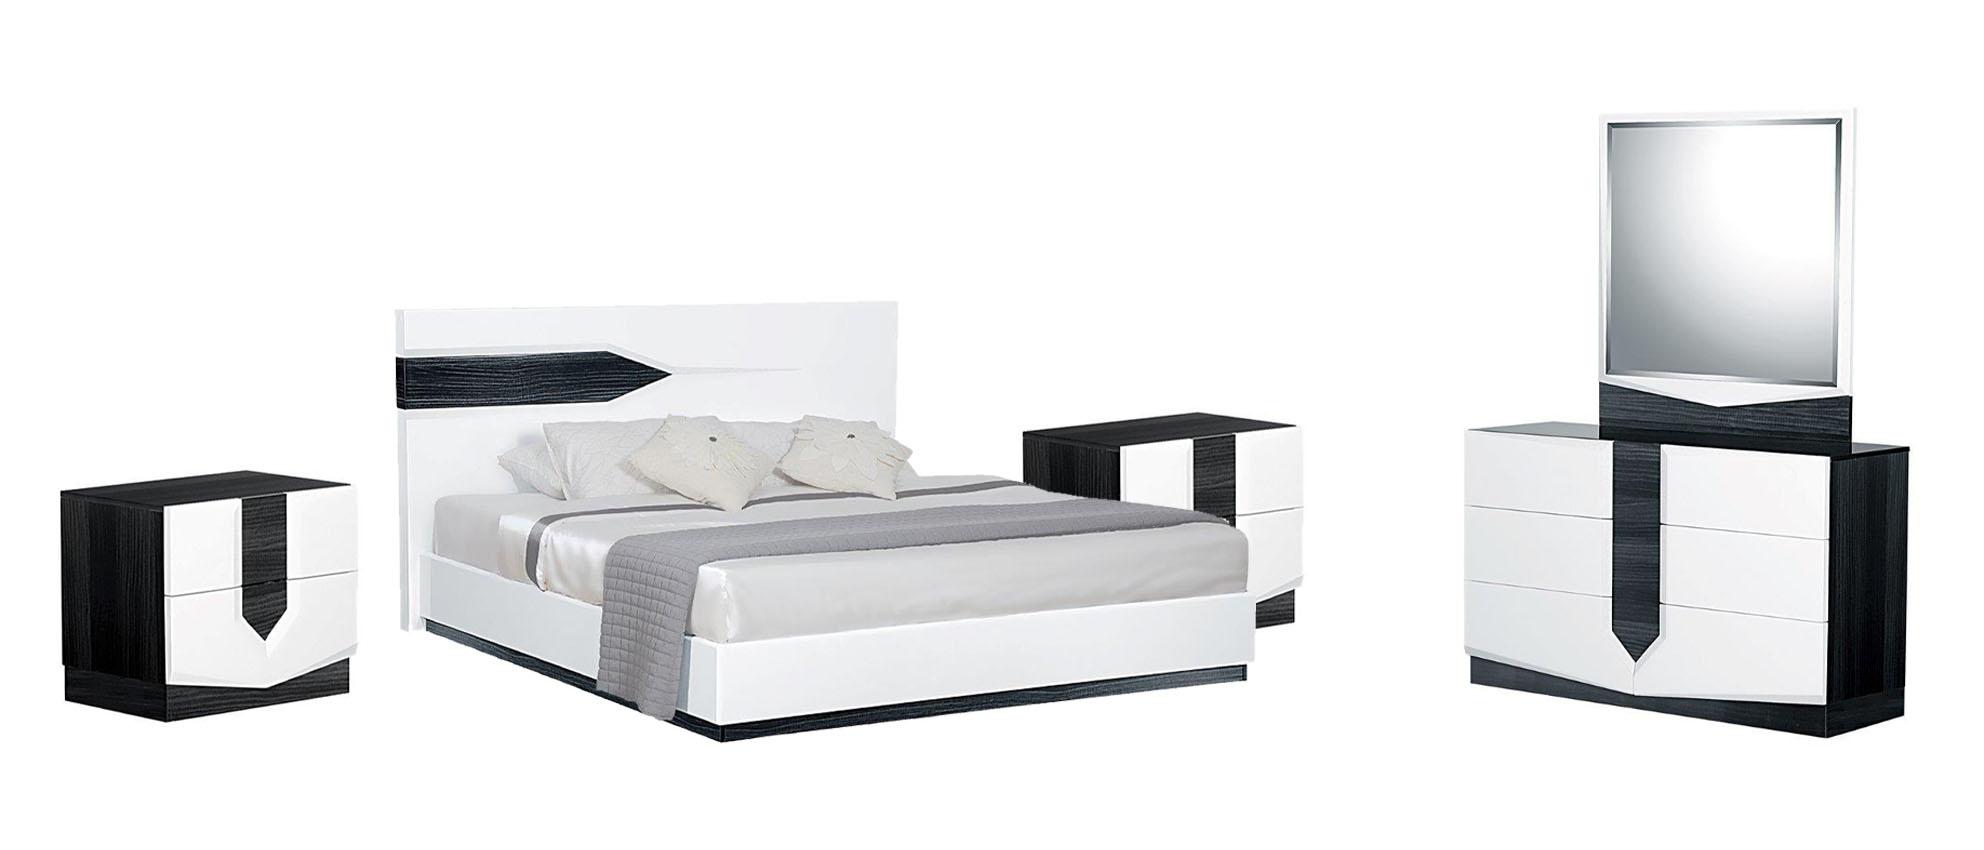 

    
HUDSON Modern High-gloss White Finish King Bedroom Set 5Pcs Global US
